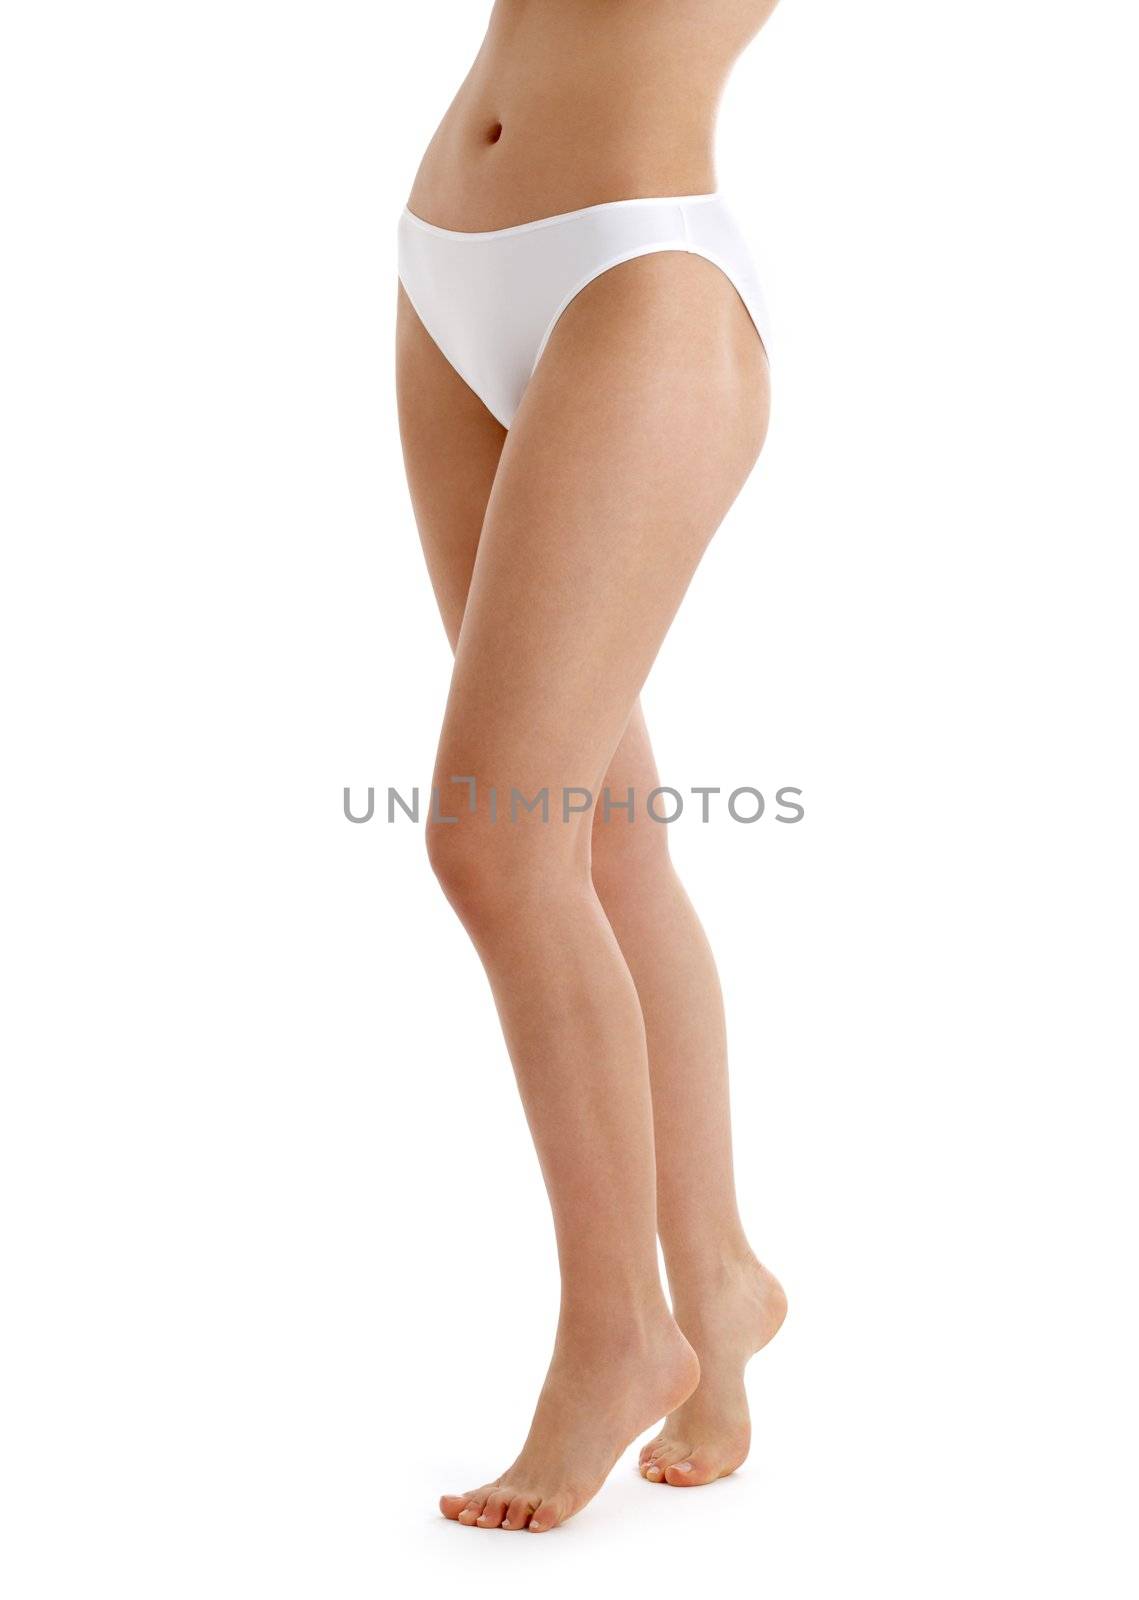 long legs in white bikini panties by dolgachov